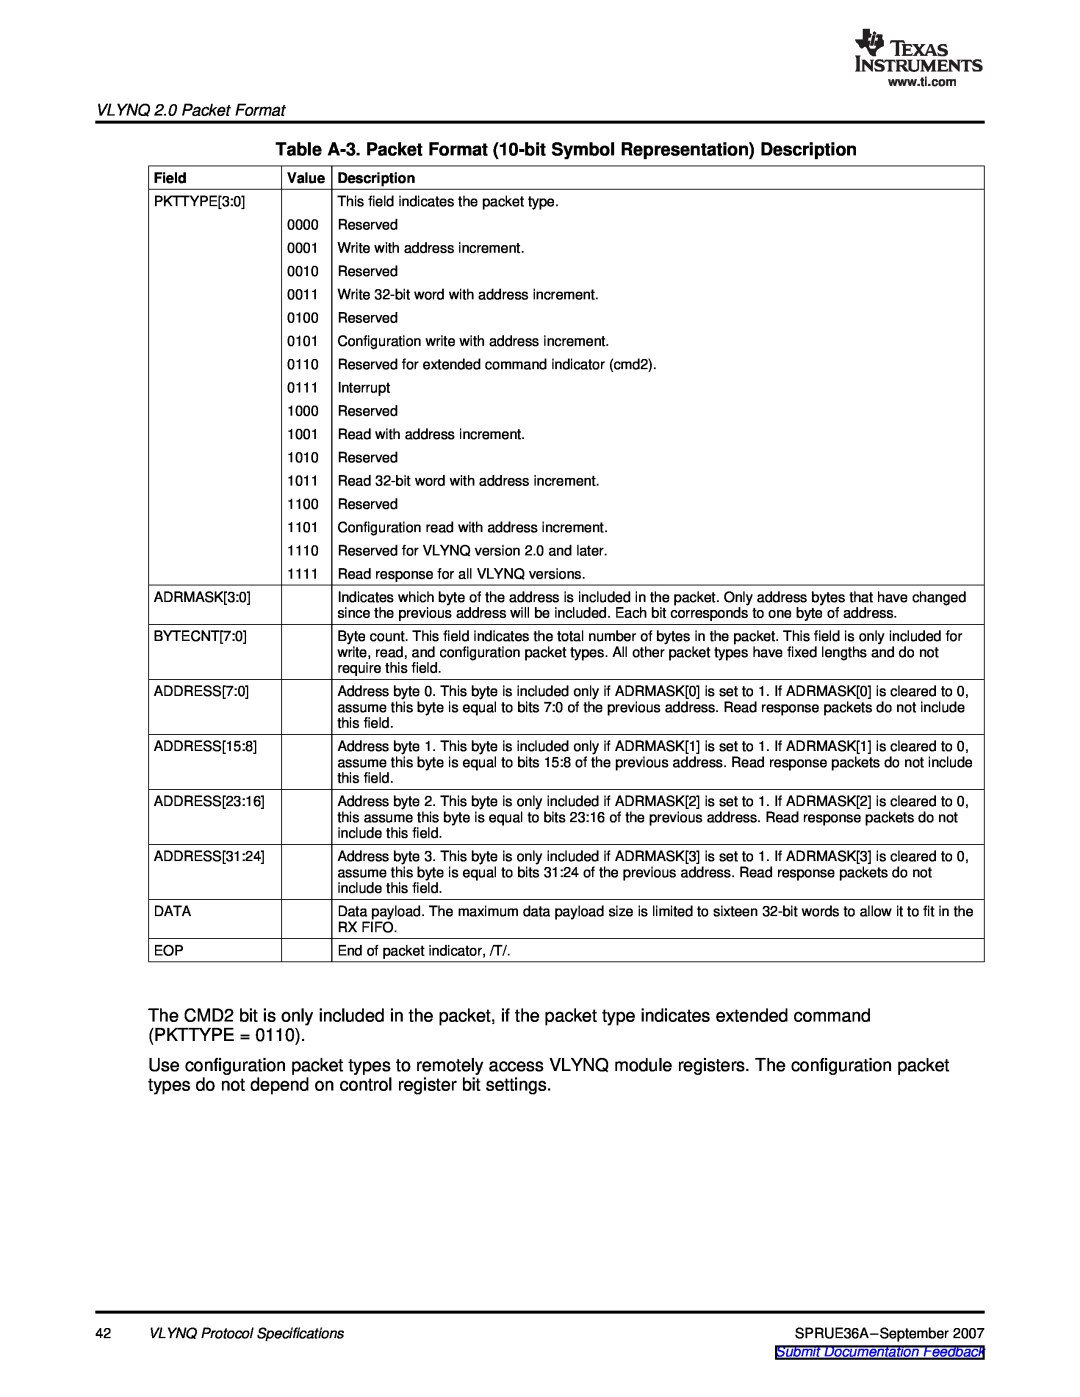 Texas Instruments VLYNQ Port manual Table A-3. Packet Format 10-bit Symbol Representation Description 